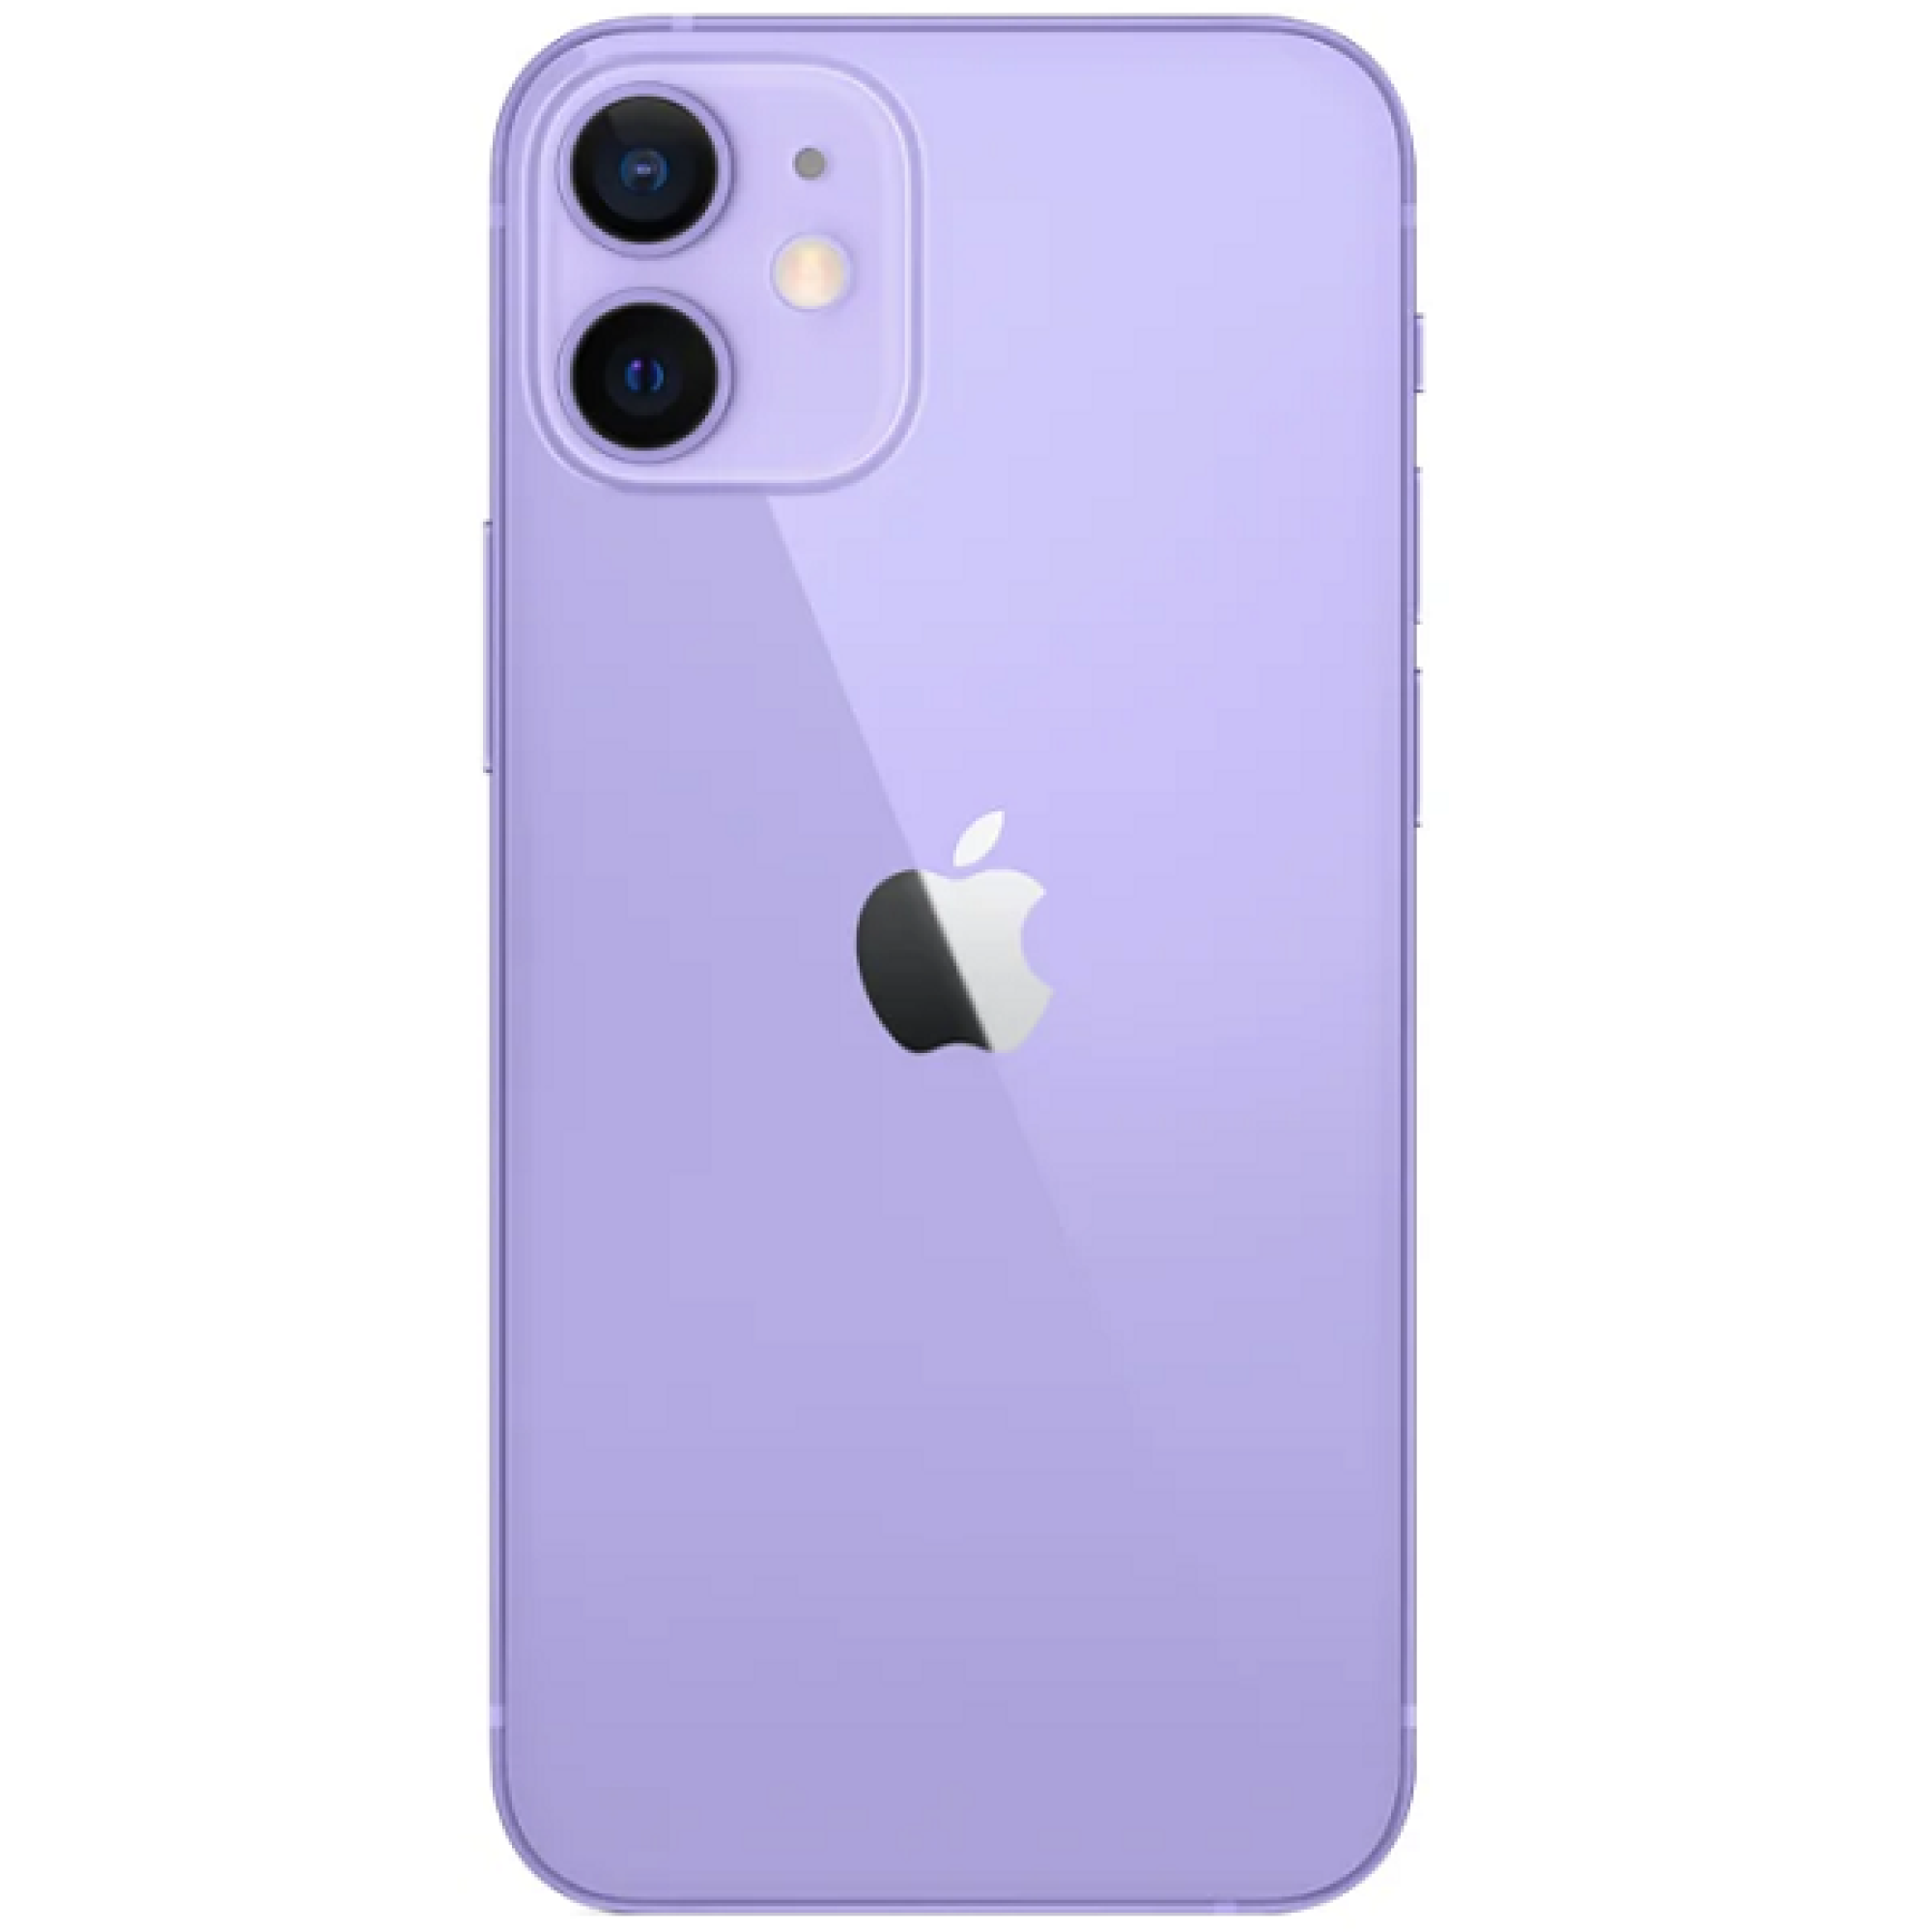 Задняя крышка для Apple iPhone 12 mini (широкое отверстие под камеру), фиолетовая